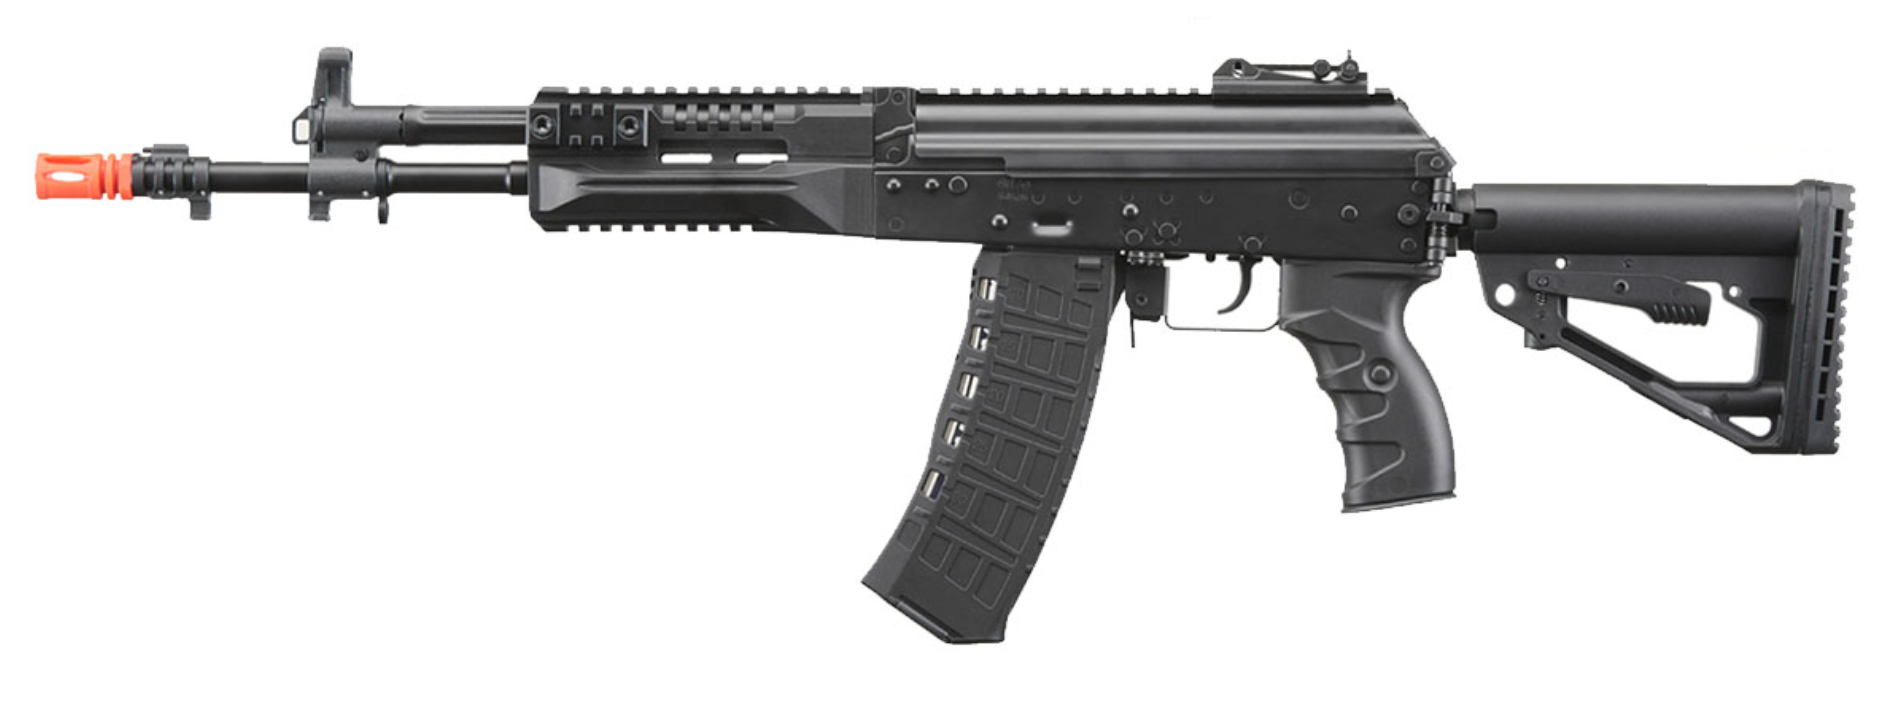 Arcturus AK12 ME AEG (Long) Airsoft Rifle